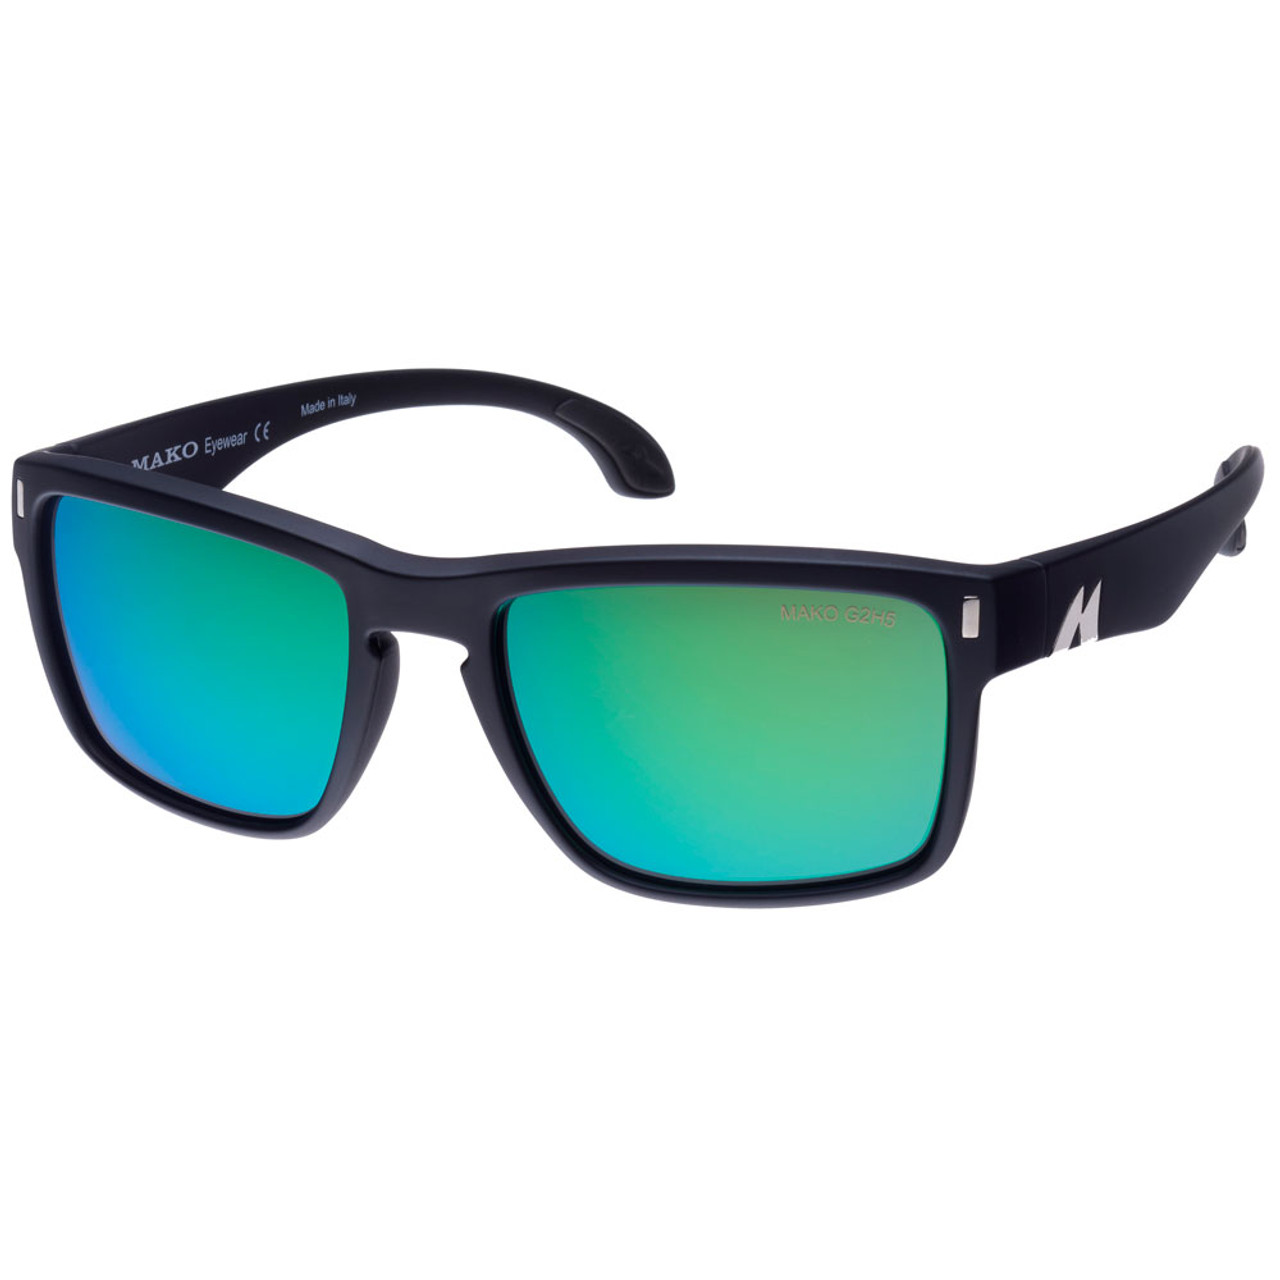 Mako GT Sunglasses best seller for fishing